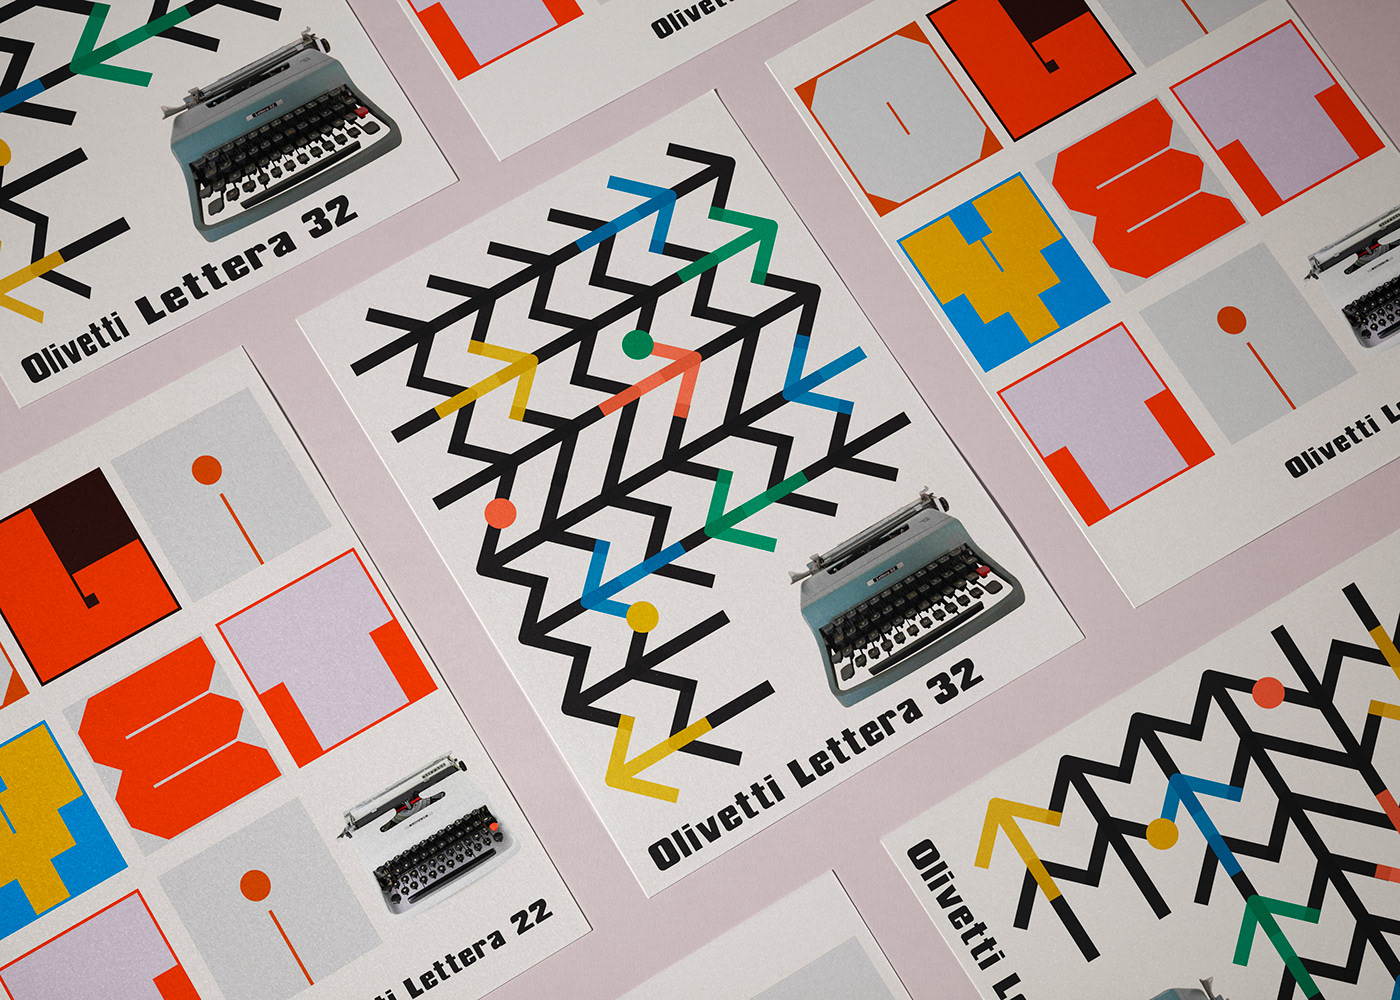 Olivetti Manifest poster grafica design italia MADEINITALY editorial macchina scrivere